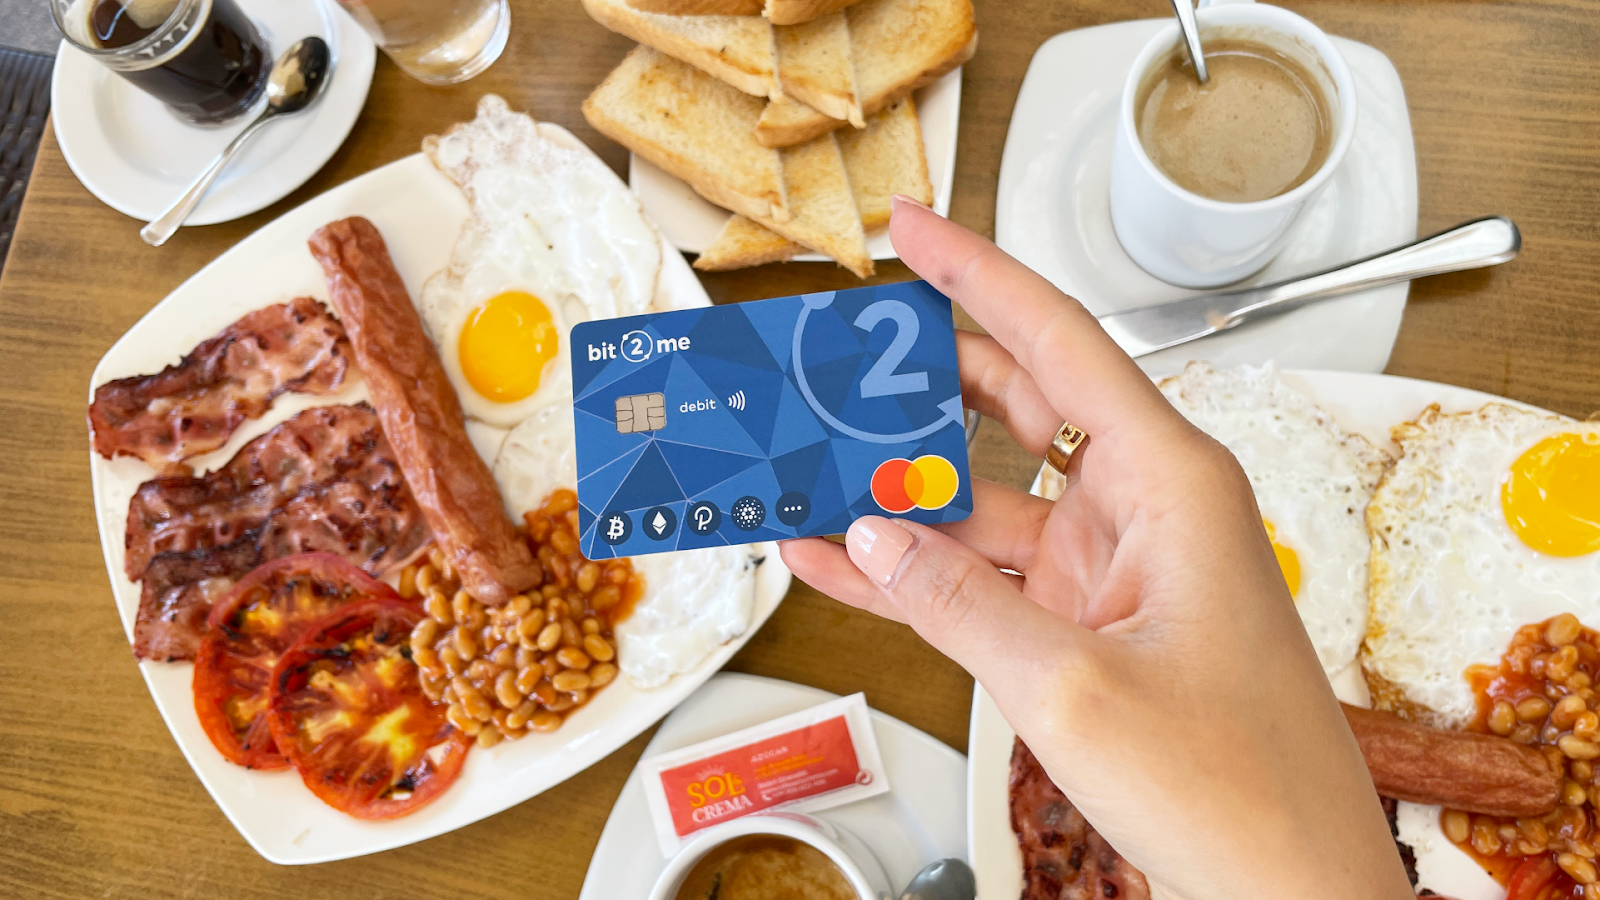 Španska berza Bit2Me lansira debitnu karticu sa programom povrata novca od 9% - 1